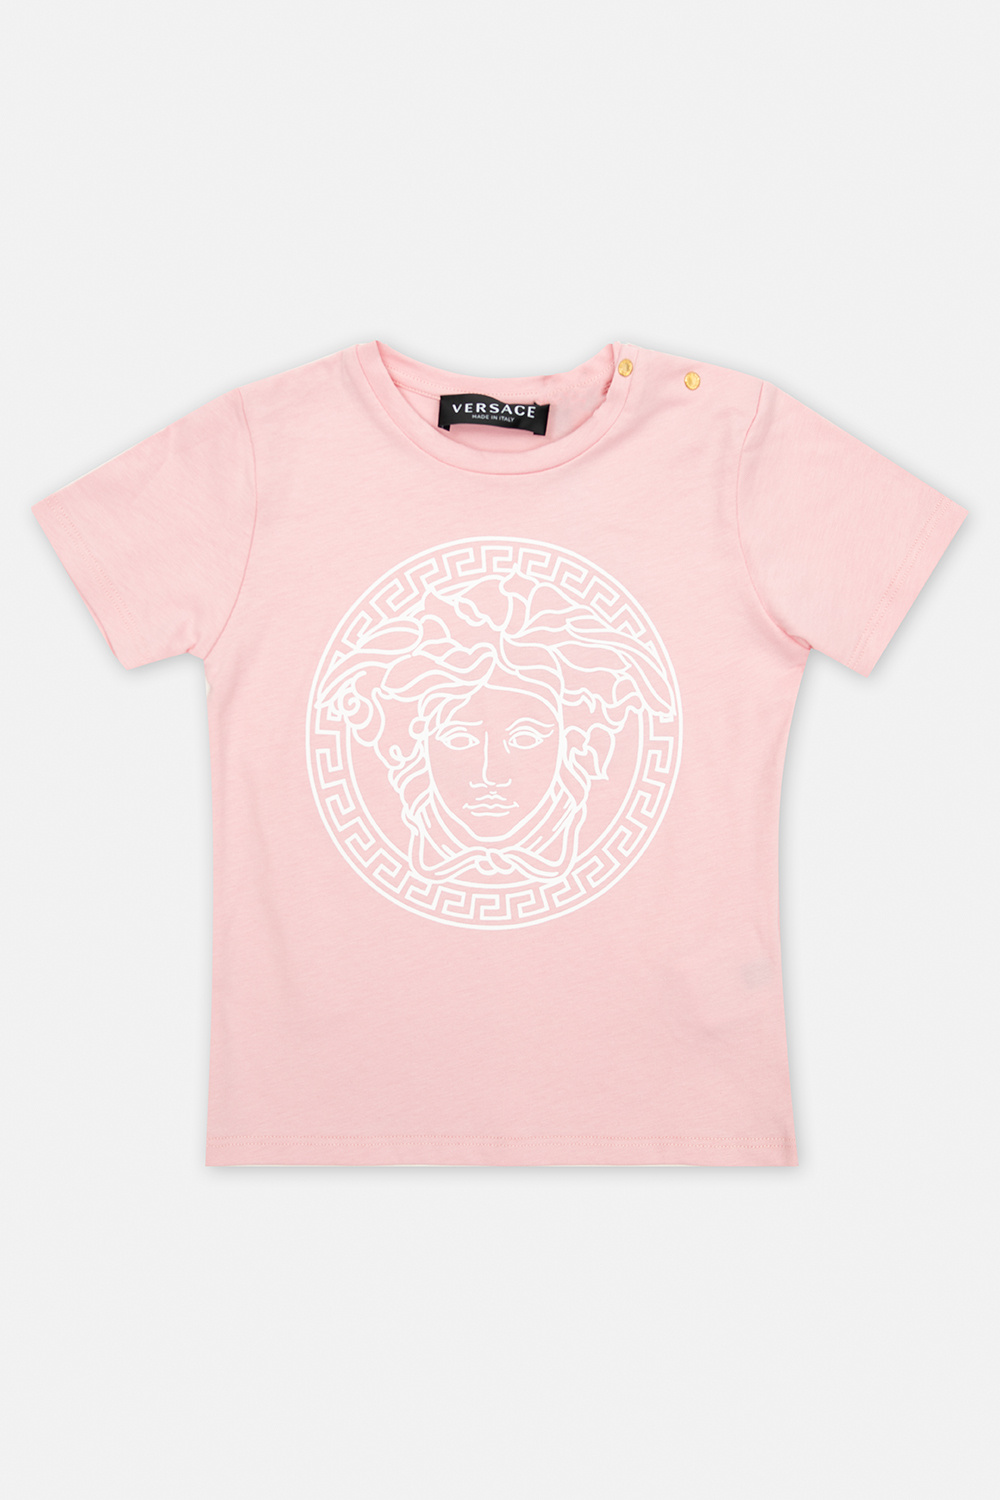 Versace Kids T-shirt Femme with Medusa head